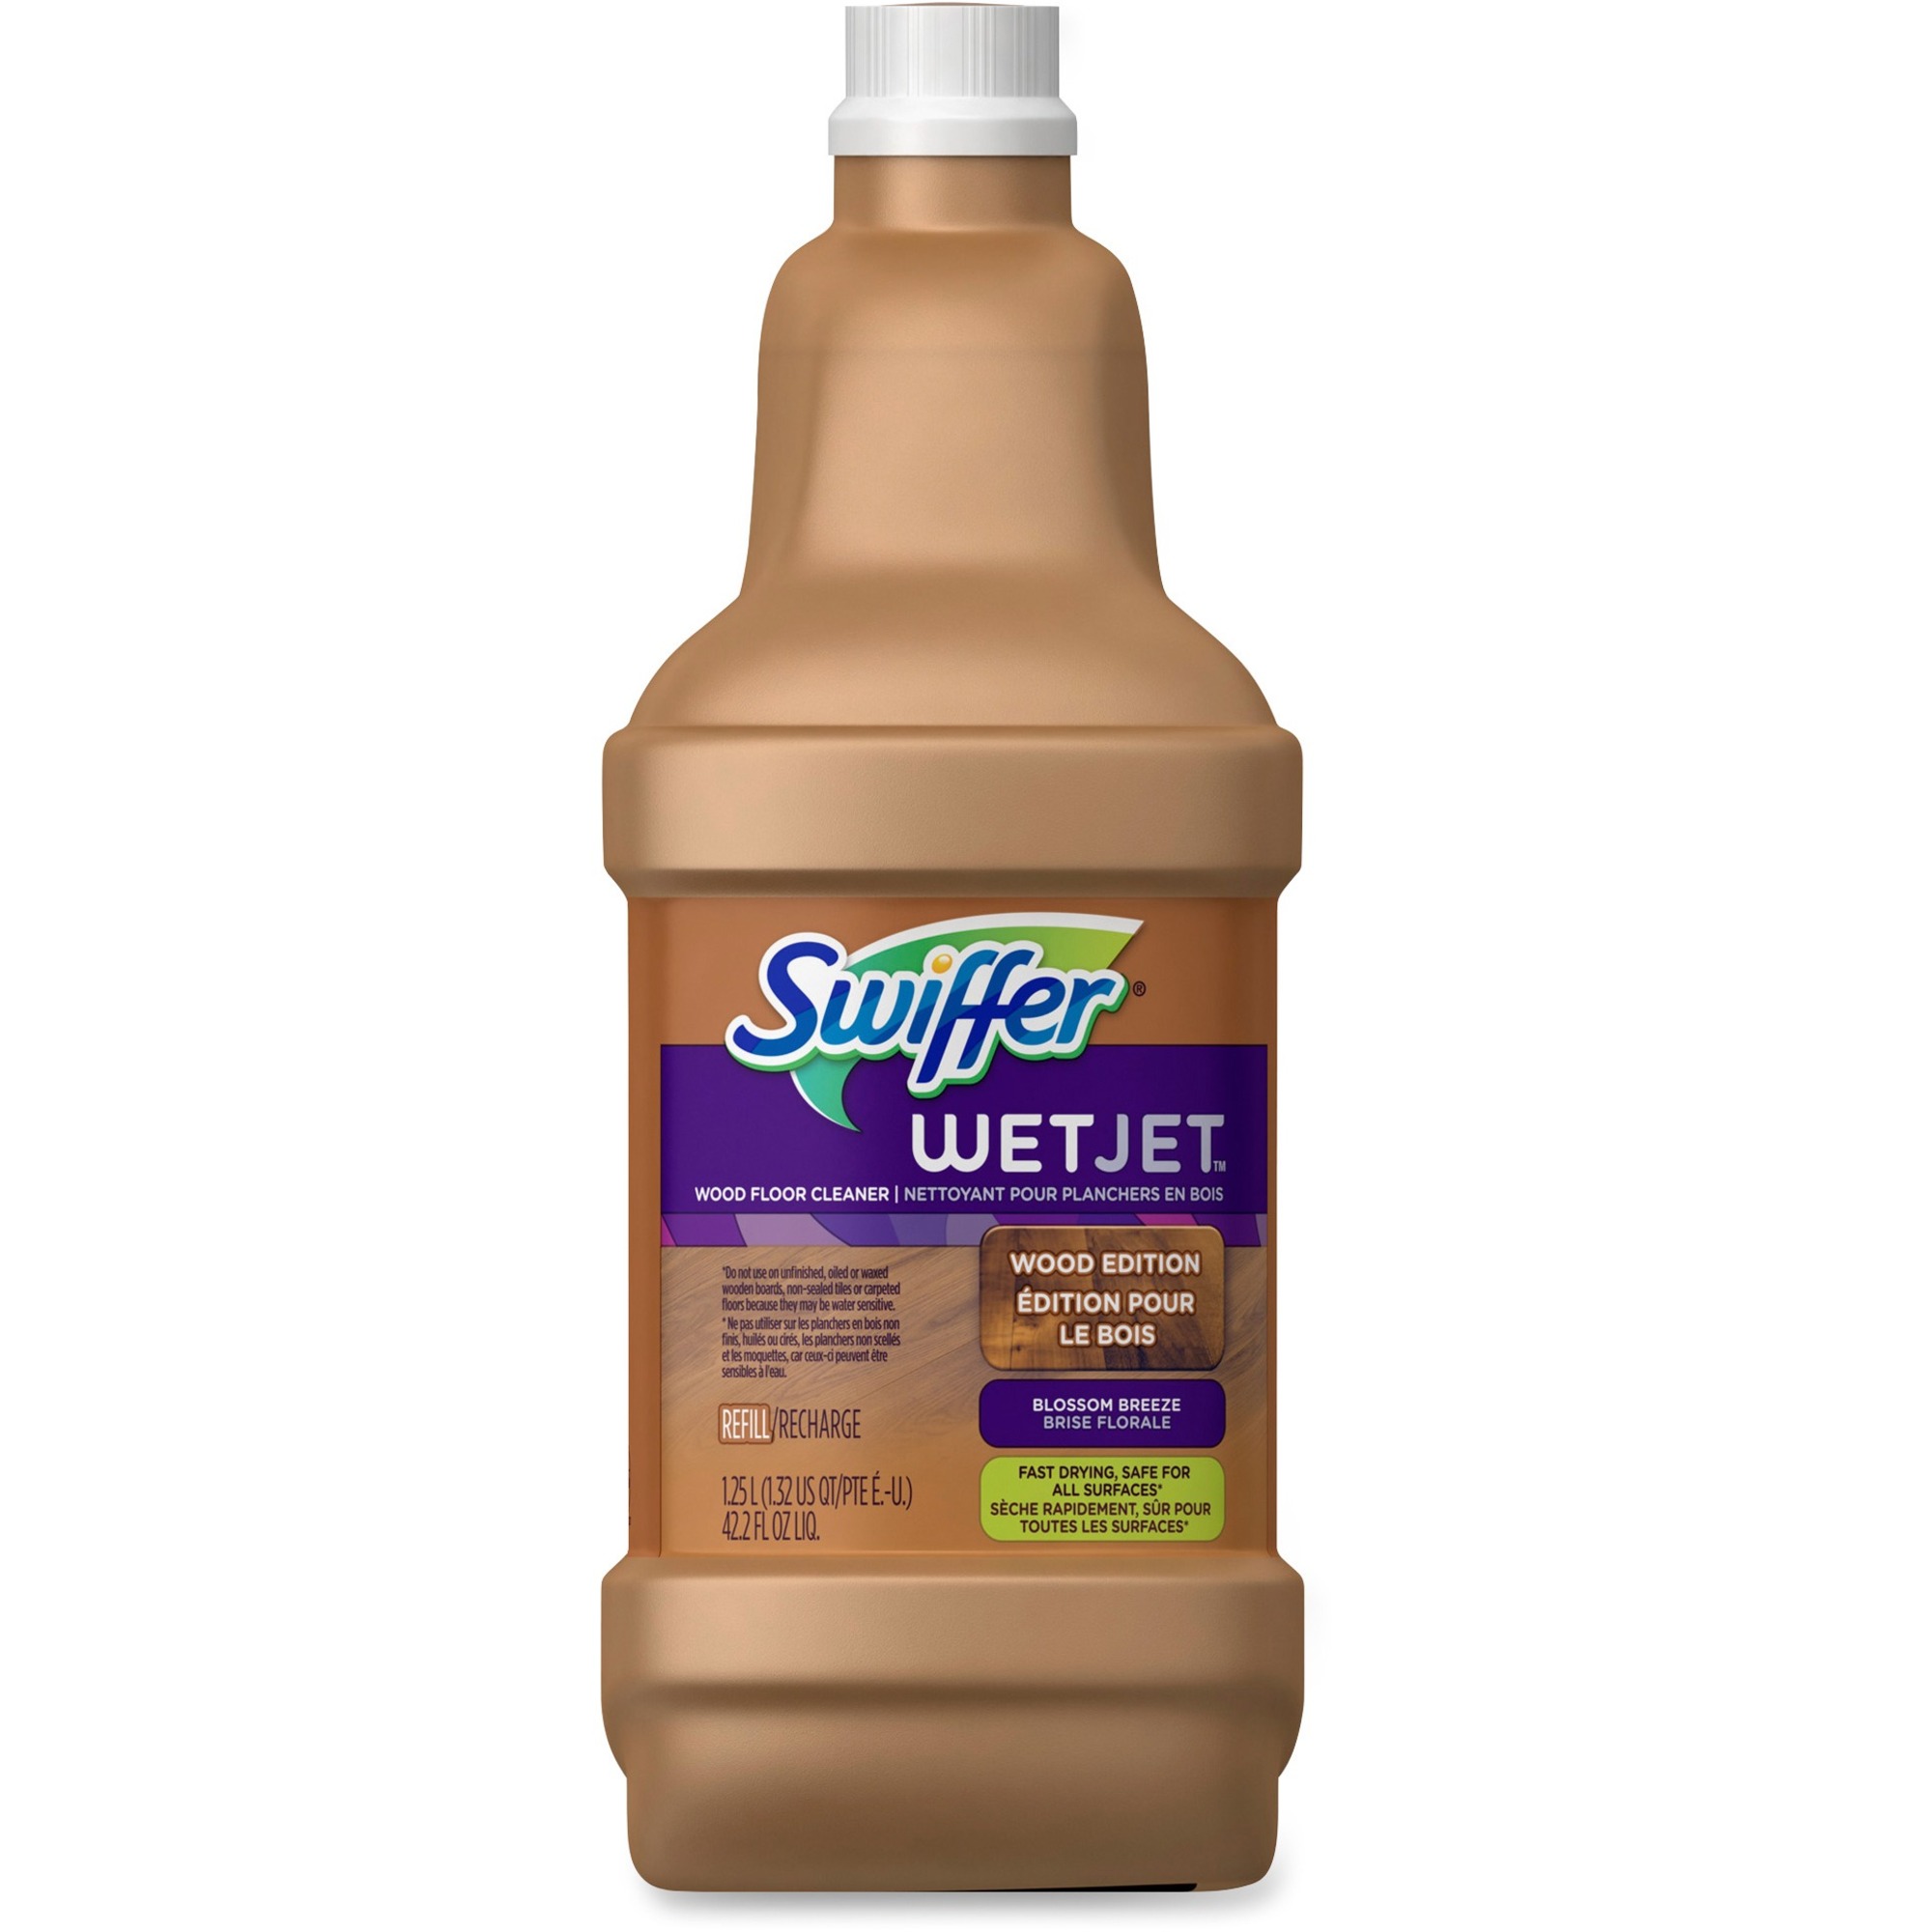 Swiffer Wetjet Wood Floor Cleaner, Is It Safe To Use Swiffer Wetjet On Hardwood Floors